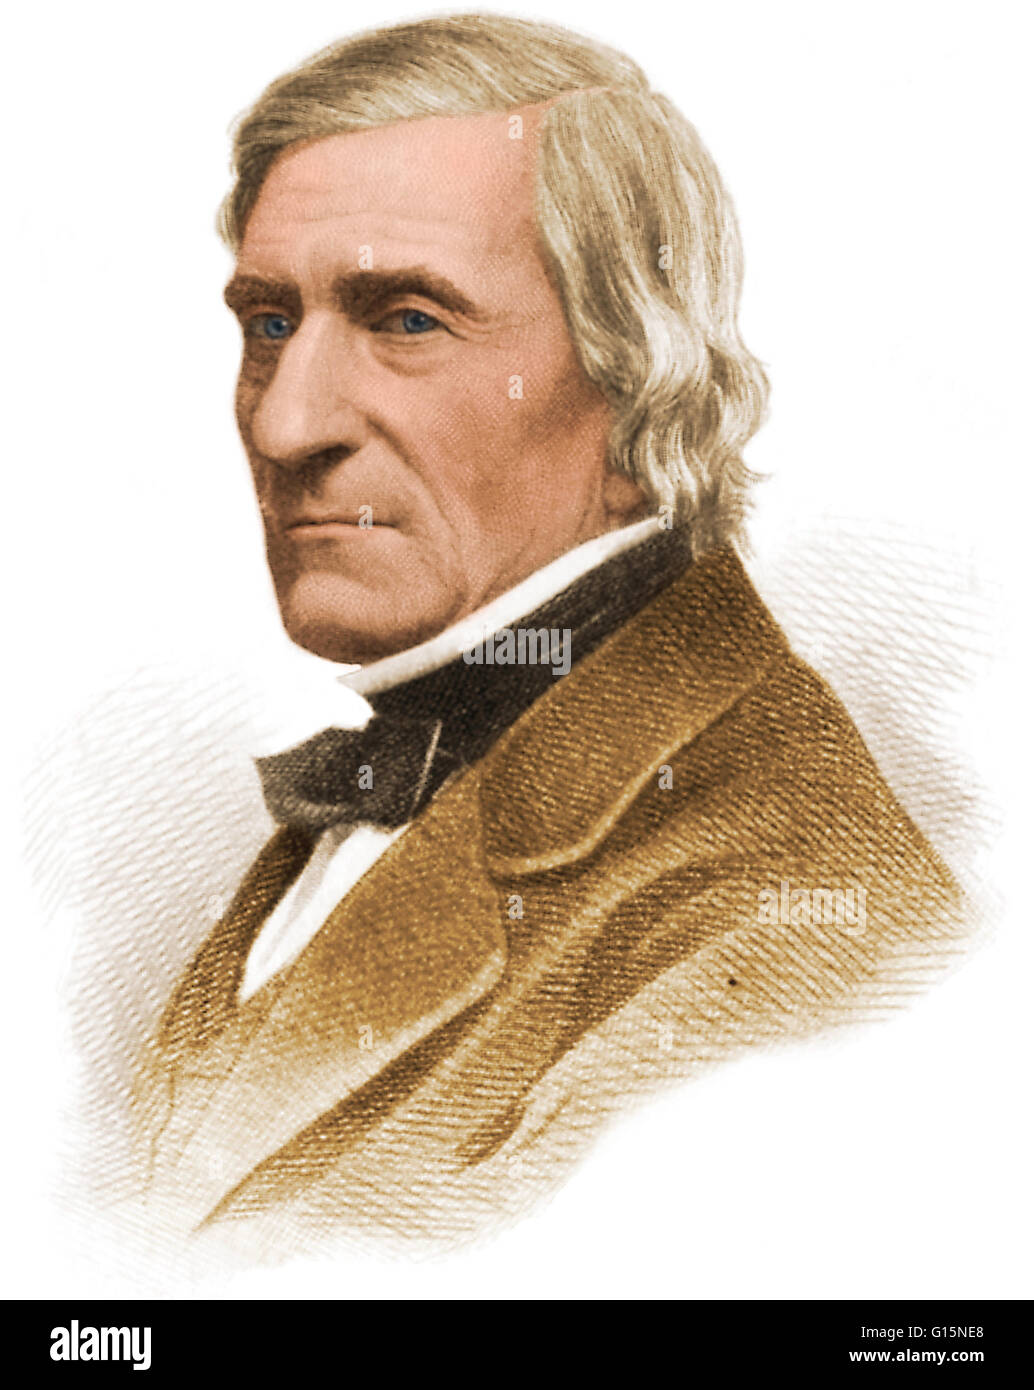 William Barton Rogers (7 décembre 1804 - 30 mai 1882) était un géologue américain, physicien et éducateur. Il a été éduqué par son père, est allé(e) à l'école publique, et est diplômé de l'College of William and Mary. Il succède à son père comme professeur Banque D'Images